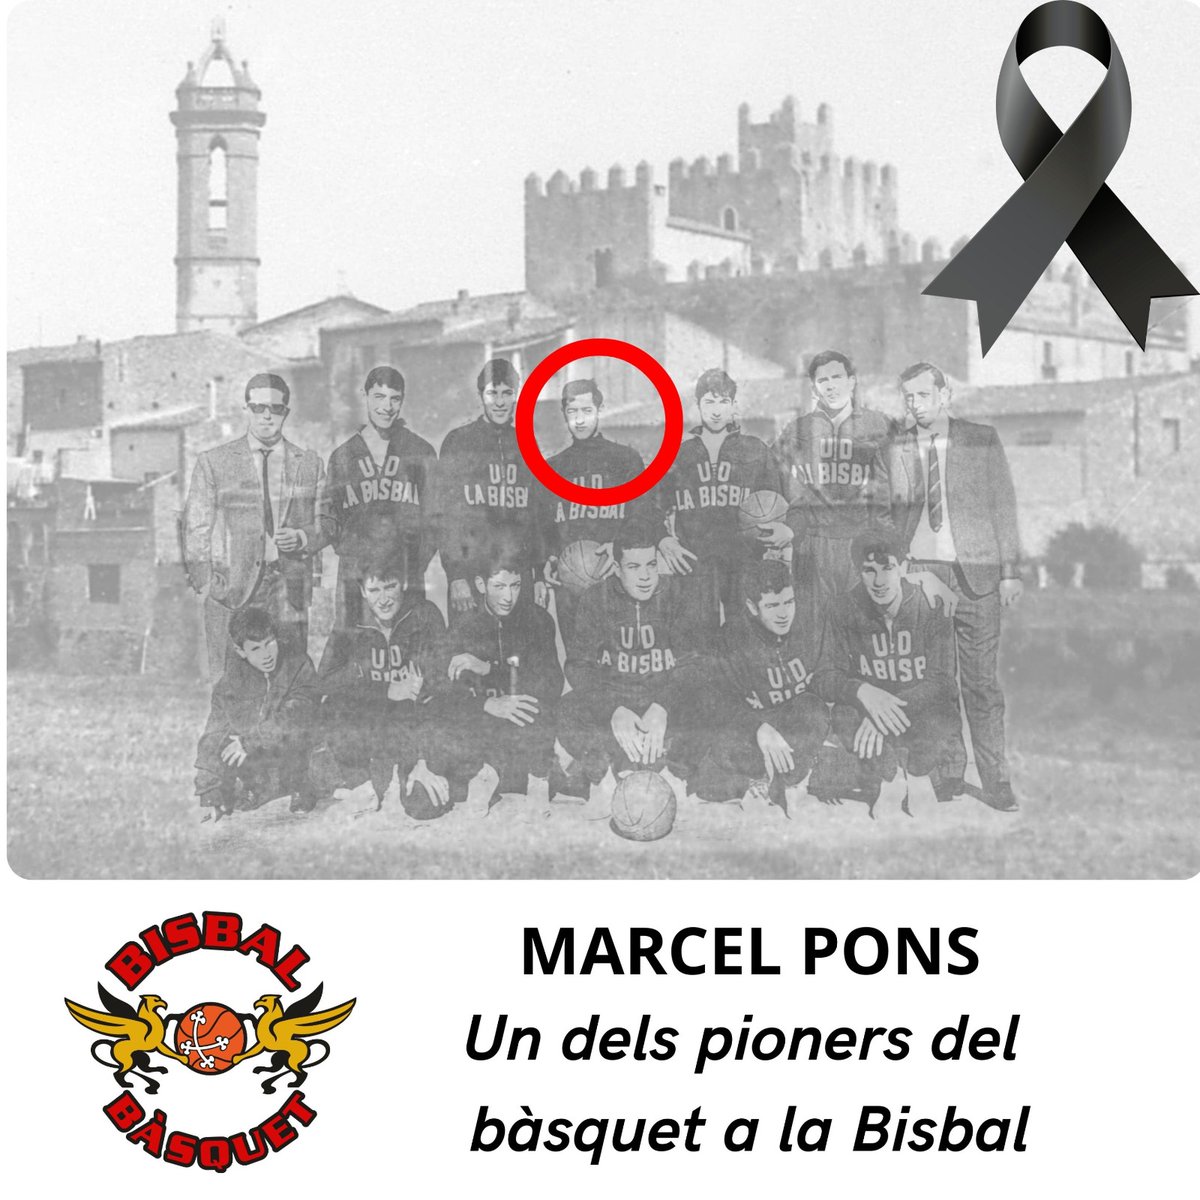 Marcel Pons - Un dels pioners 🖤 Des del @bisbalbasquet expressem el constre condol a la família i amics d'en Marcel Pons. En Marcel va ser un dels pioners del bàsquet a la Bisbal. Sentim una gratitud immensa per haver engegat el nostre esport a la nostra ciutat. En Marcel…